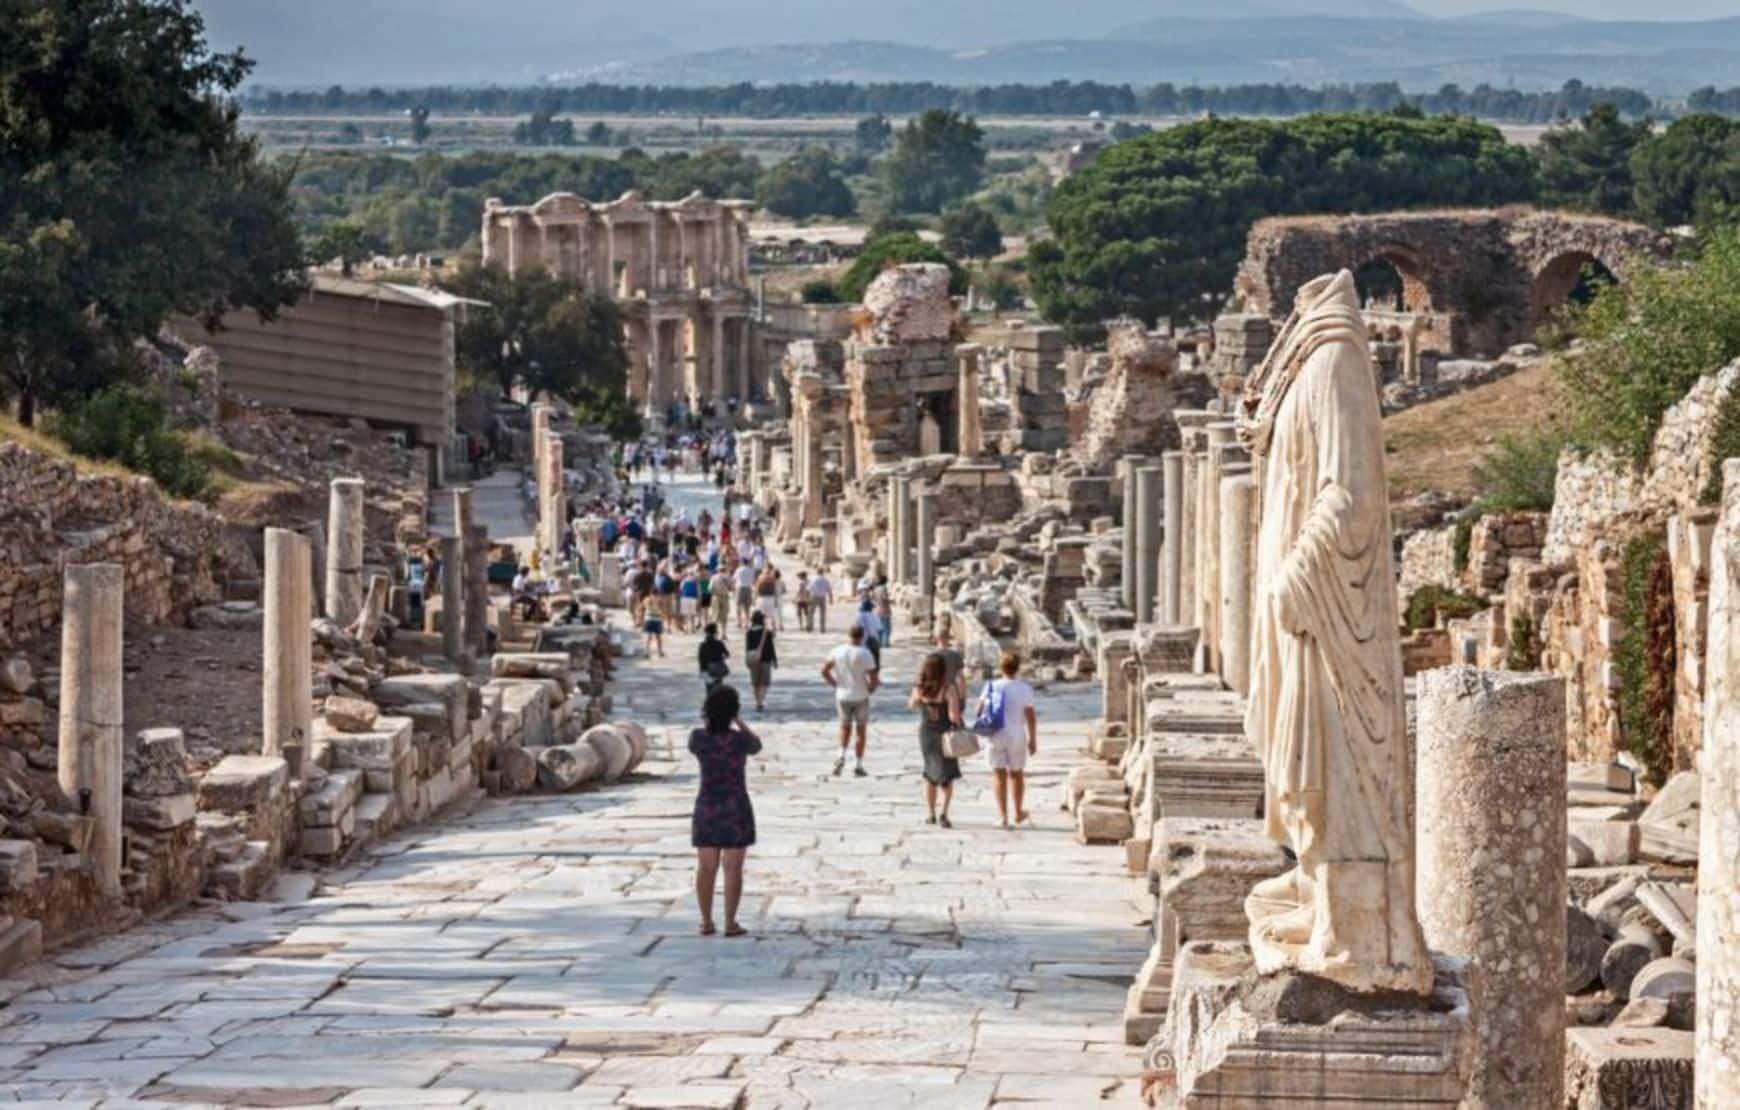 Selcuk Ephesus Private Tour - King's Way - Ephesus Ancient City